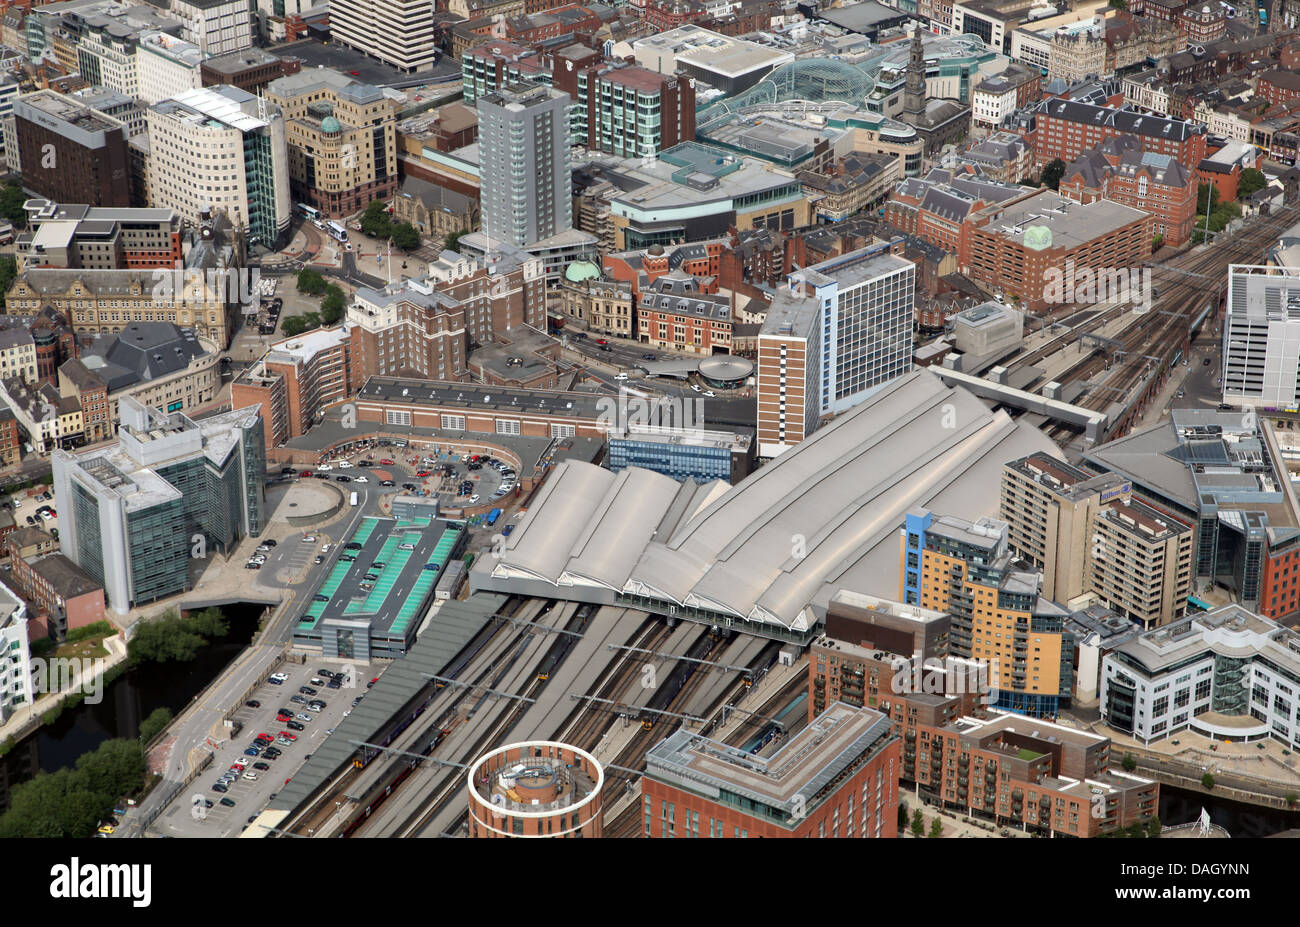 Vue aérienne de la gare de la ville de Leeds Banque D'Images